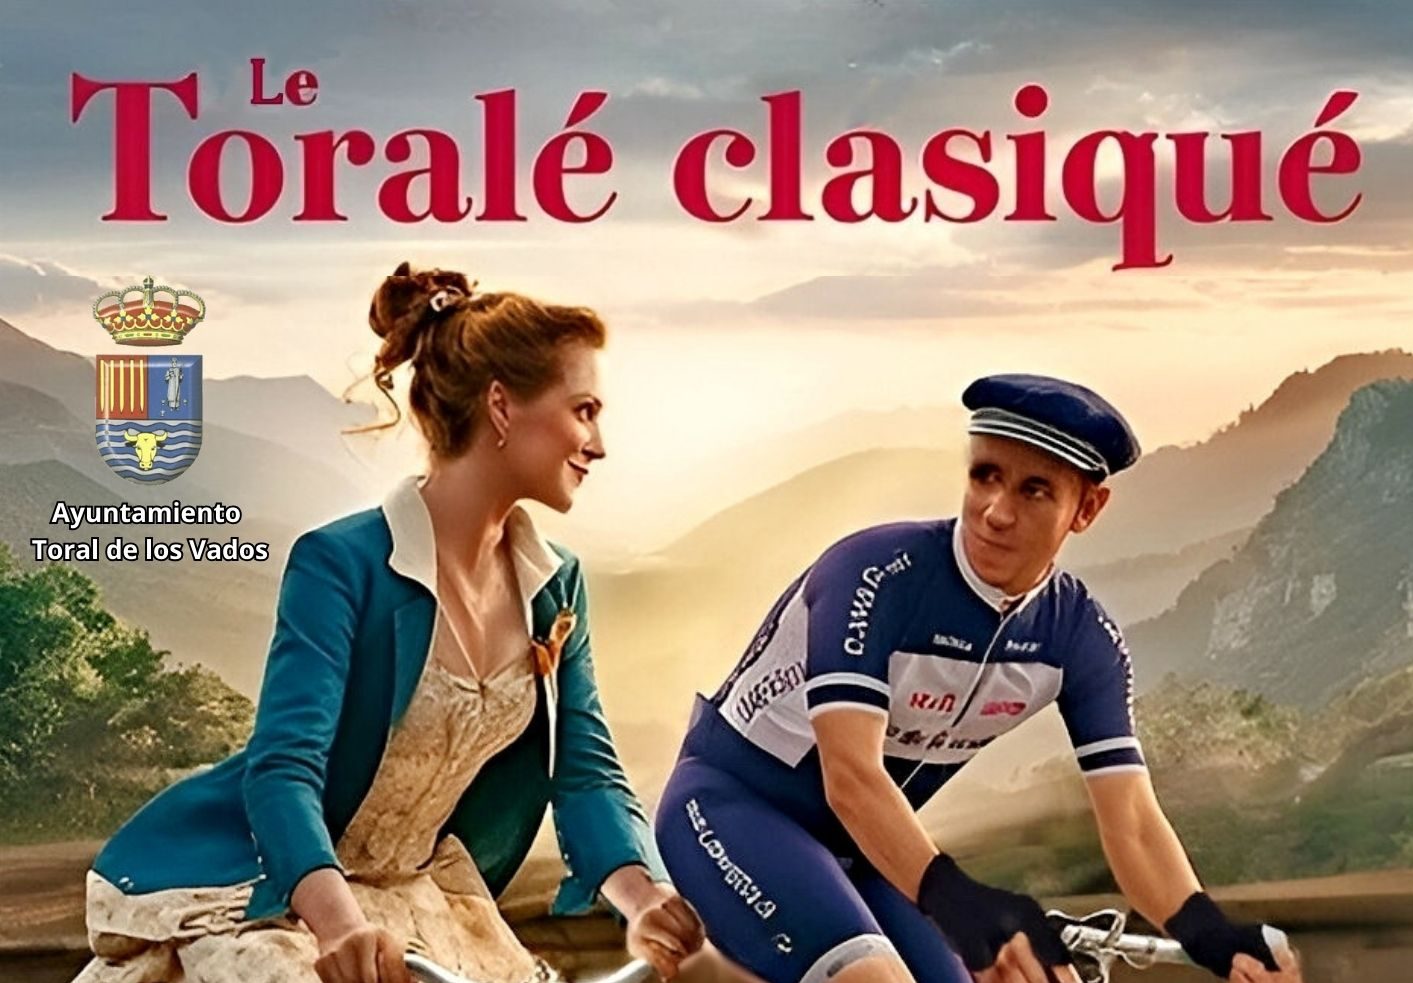 Le Toralé Clasiqué: ¡Las bicicletas son para el verano! en Toral de los Vados 1